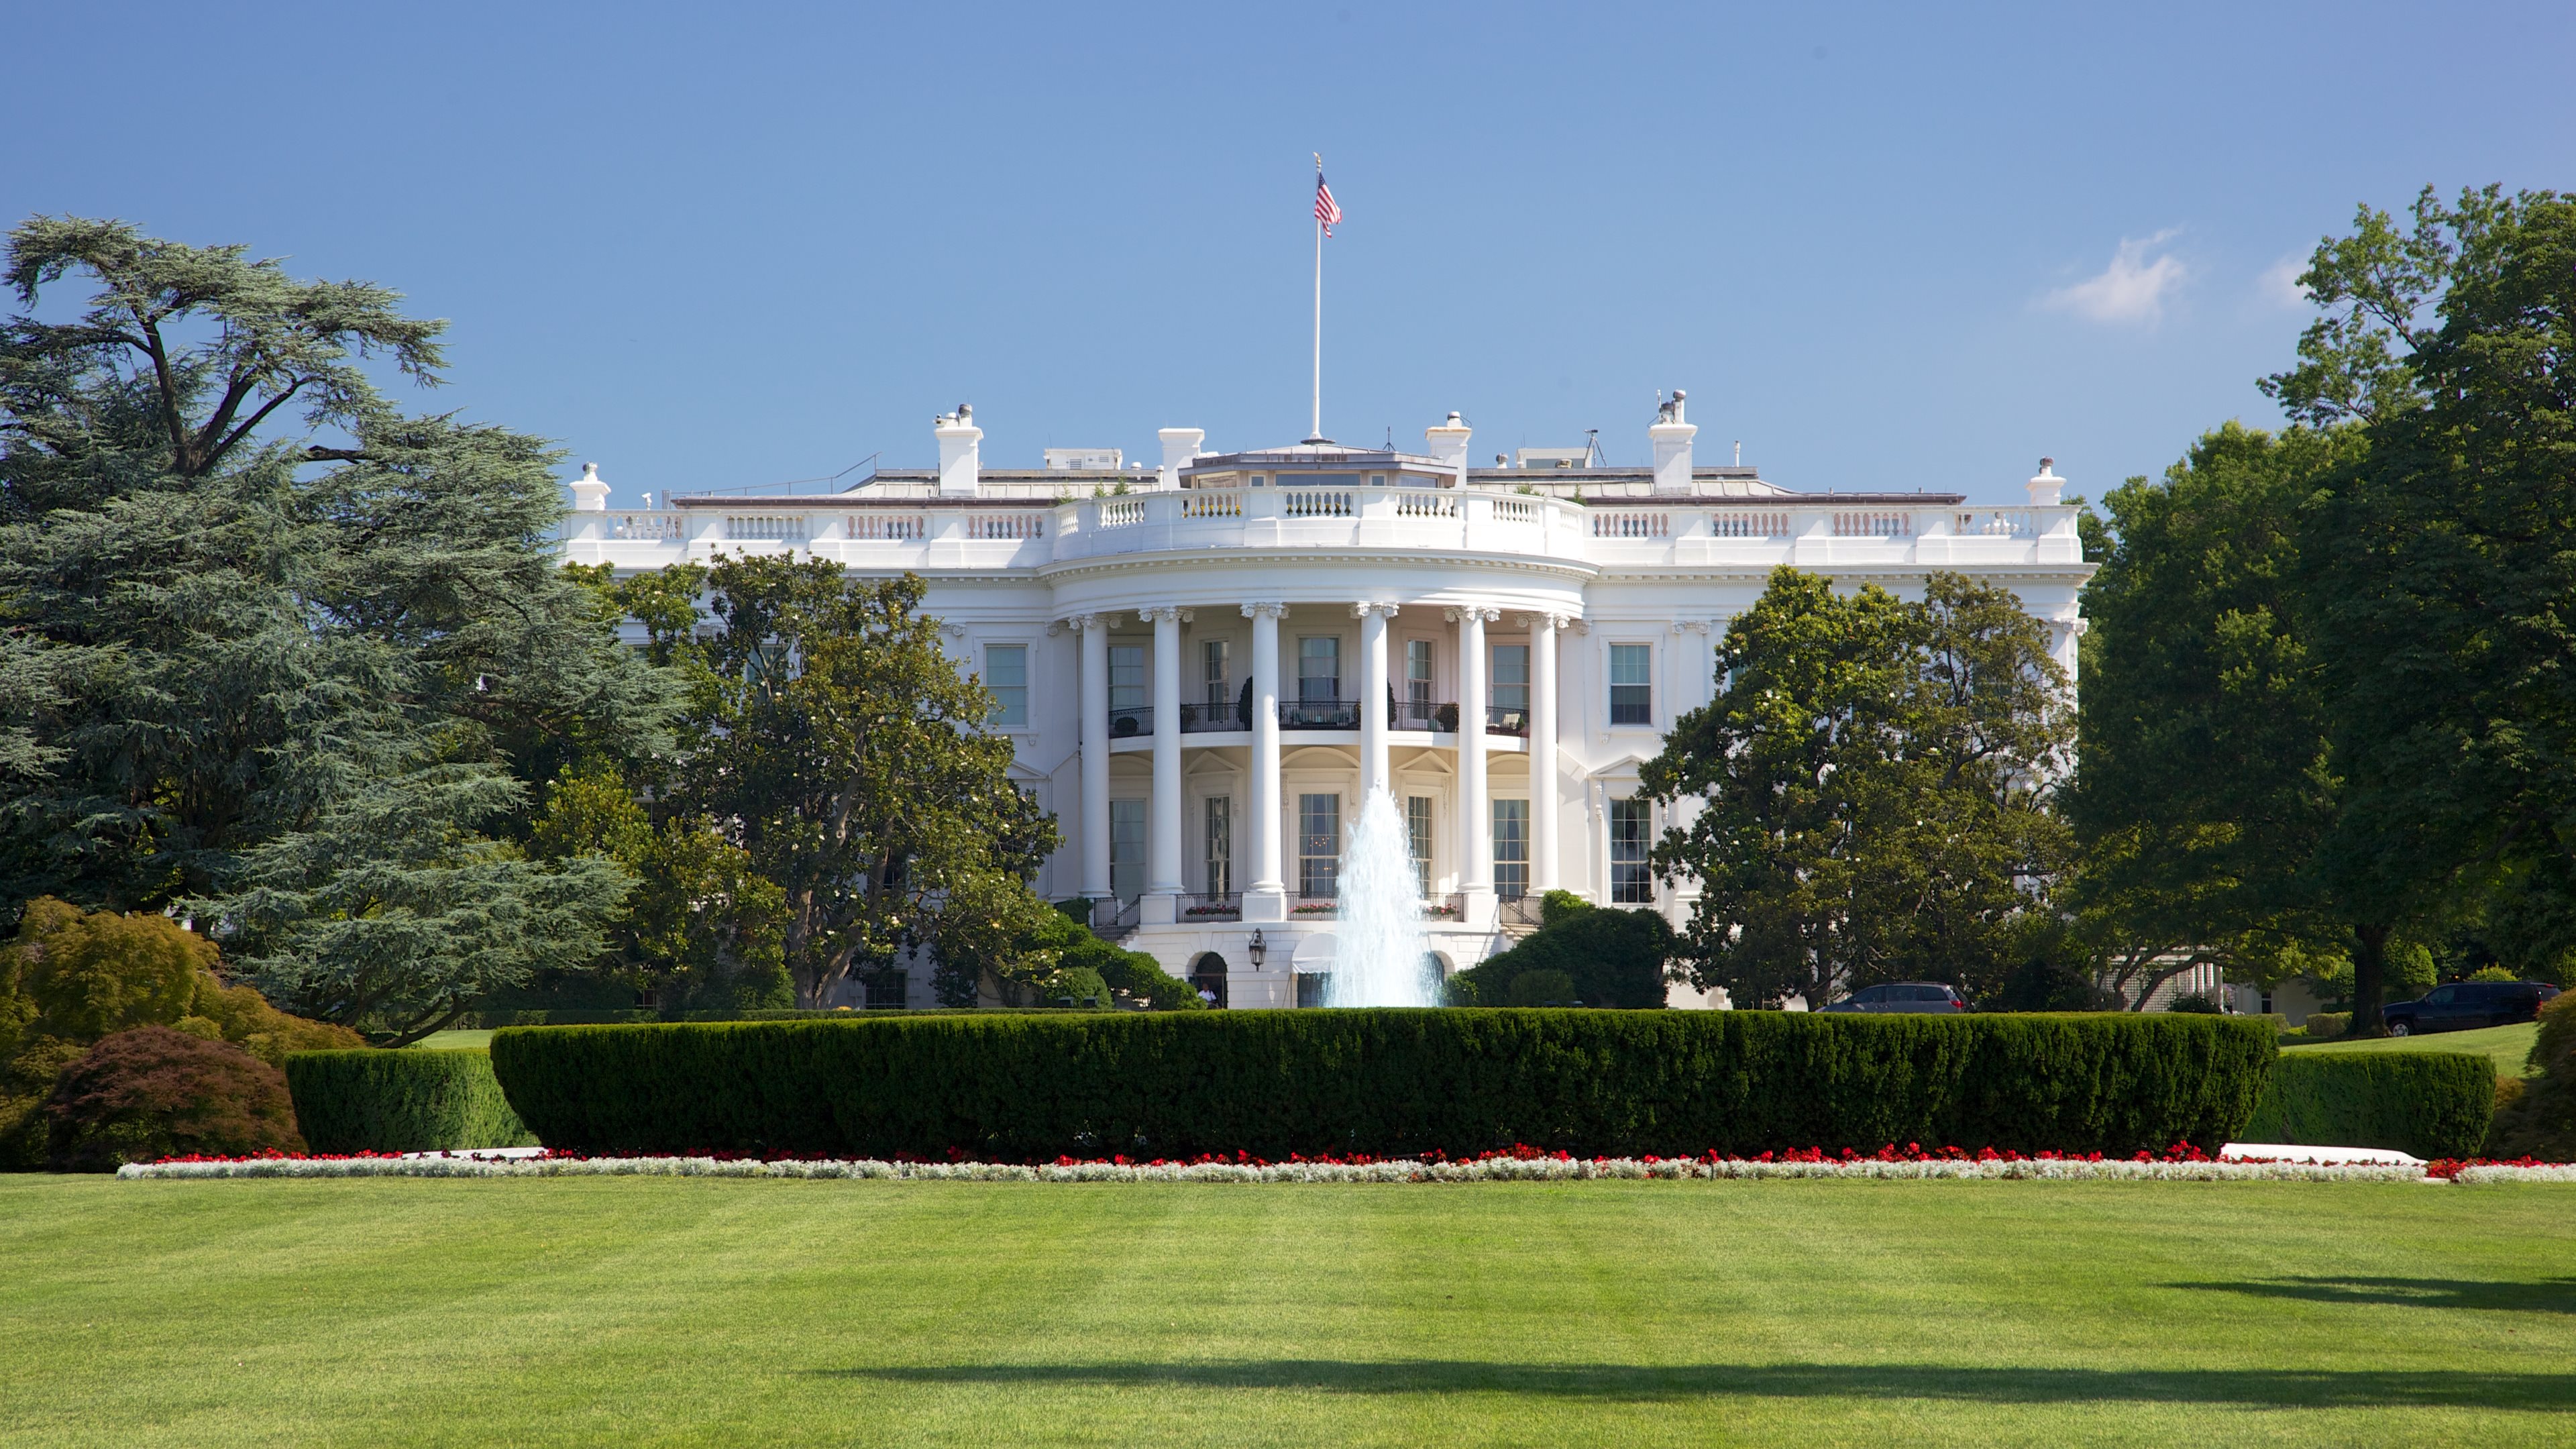 White House WallpaperUSkY.com